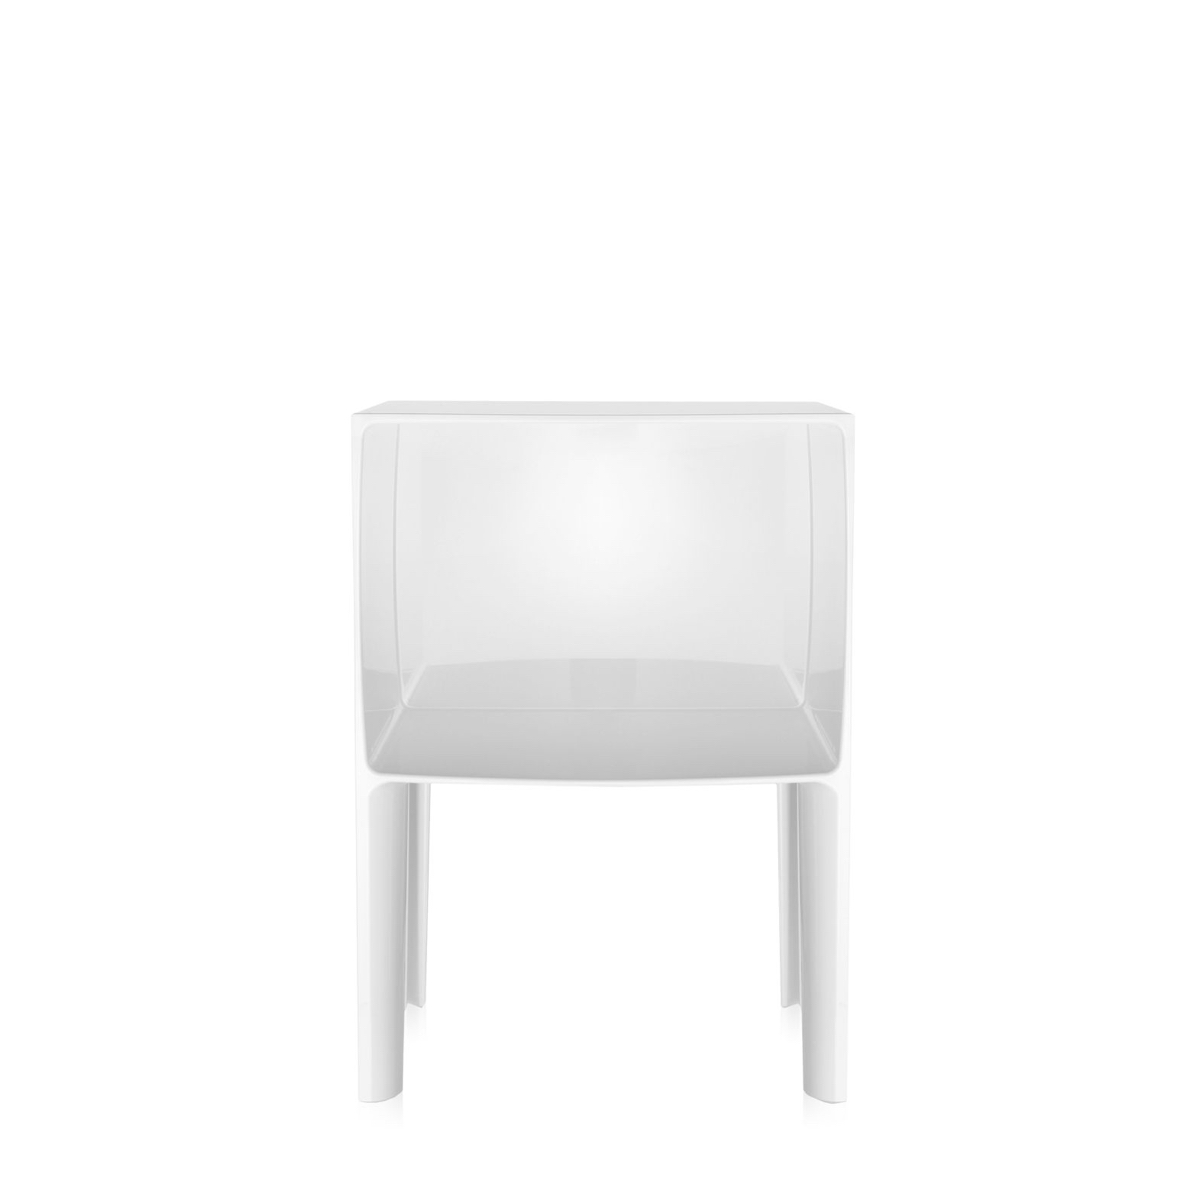 Удобная мебель для спальни - белый столик в форме куба из пластика на ножках